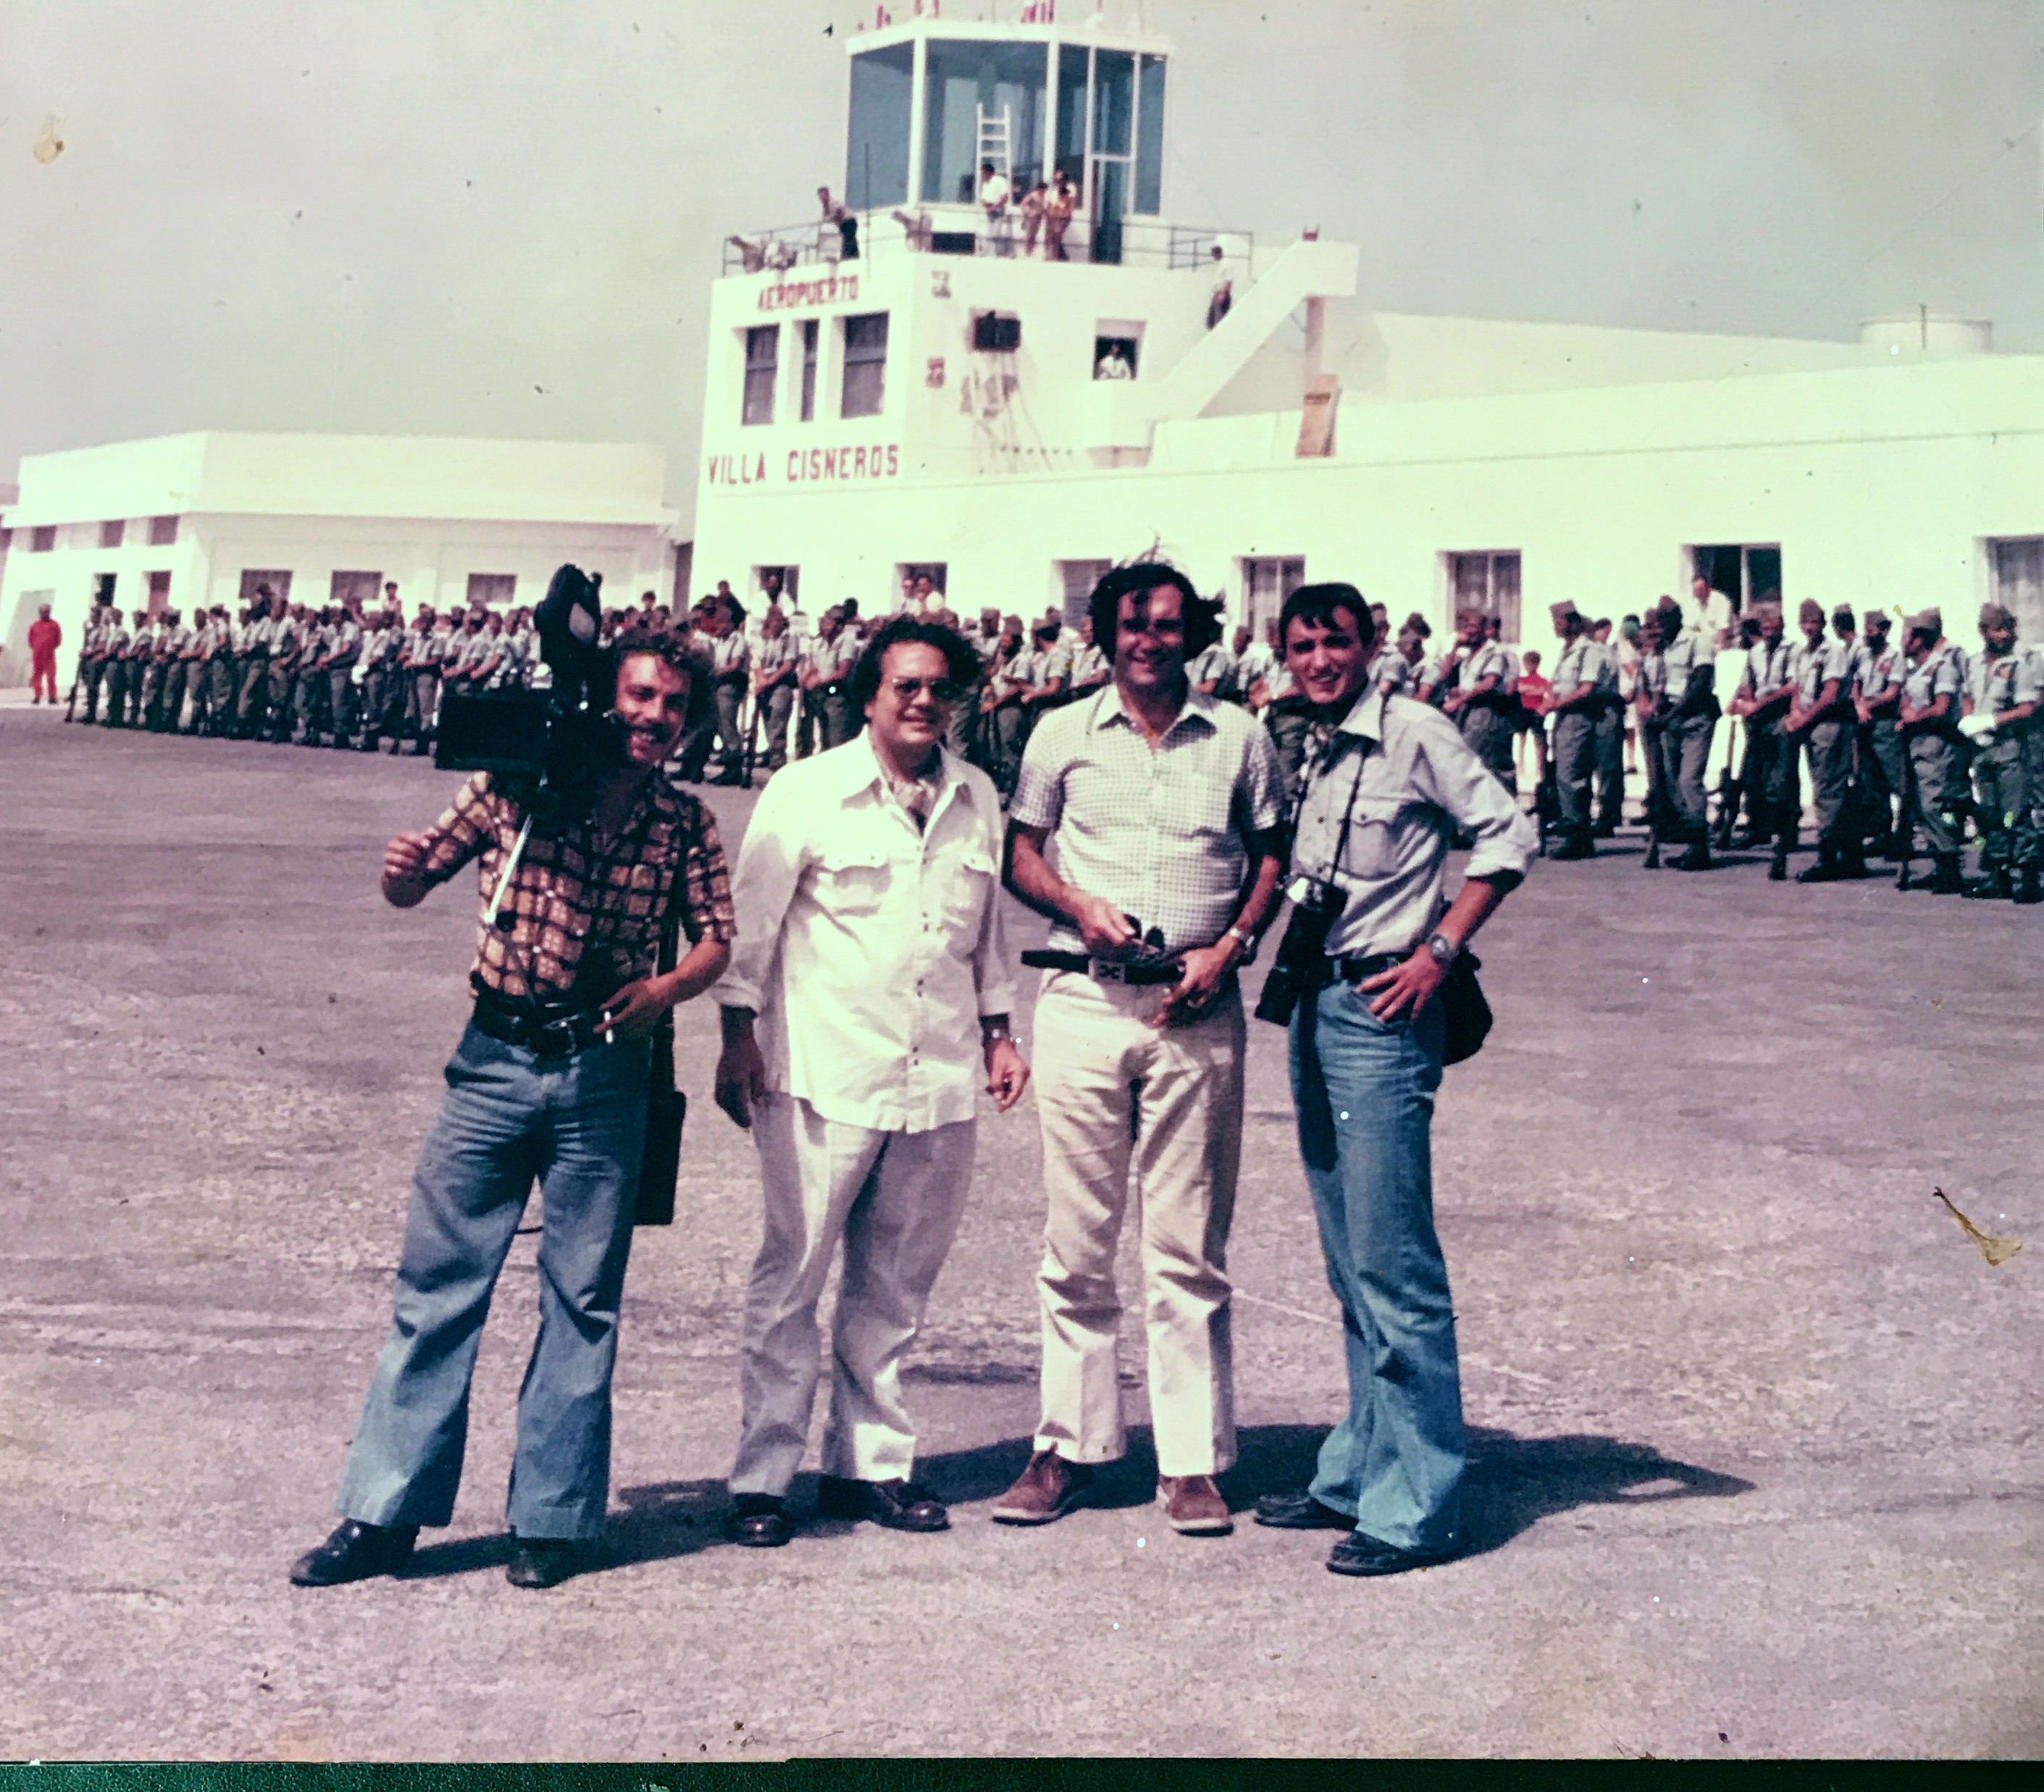 Año 1975, aeropuerto de Villa Cisneros, Sahara